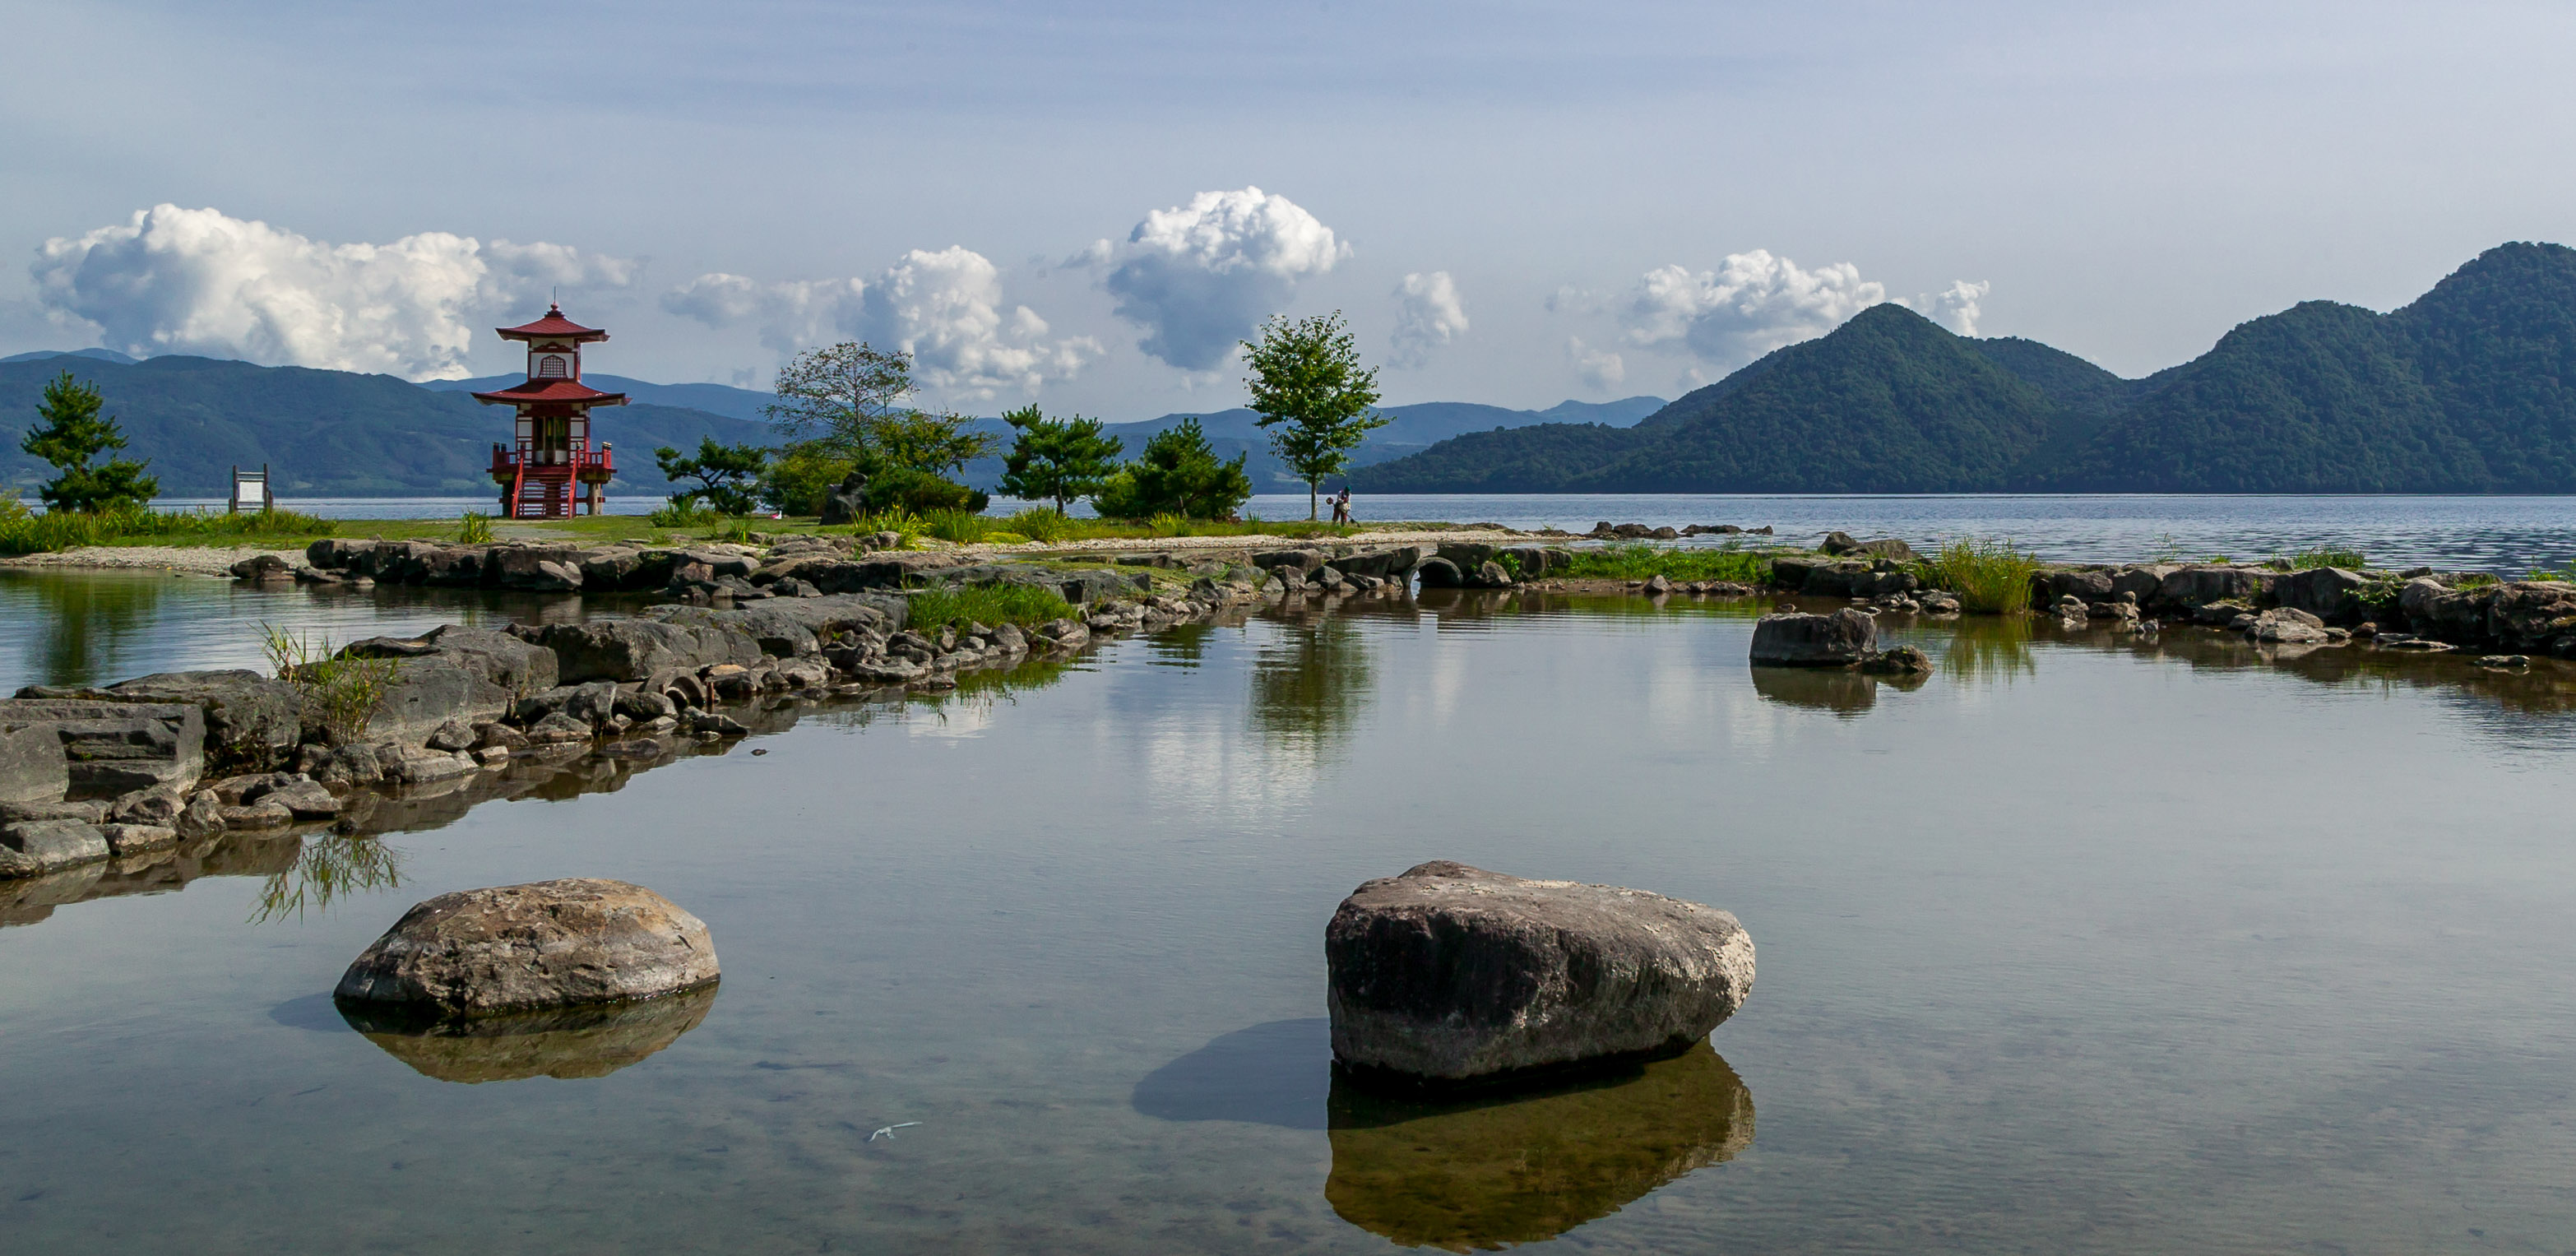 Sights along shore of Toyako Lake